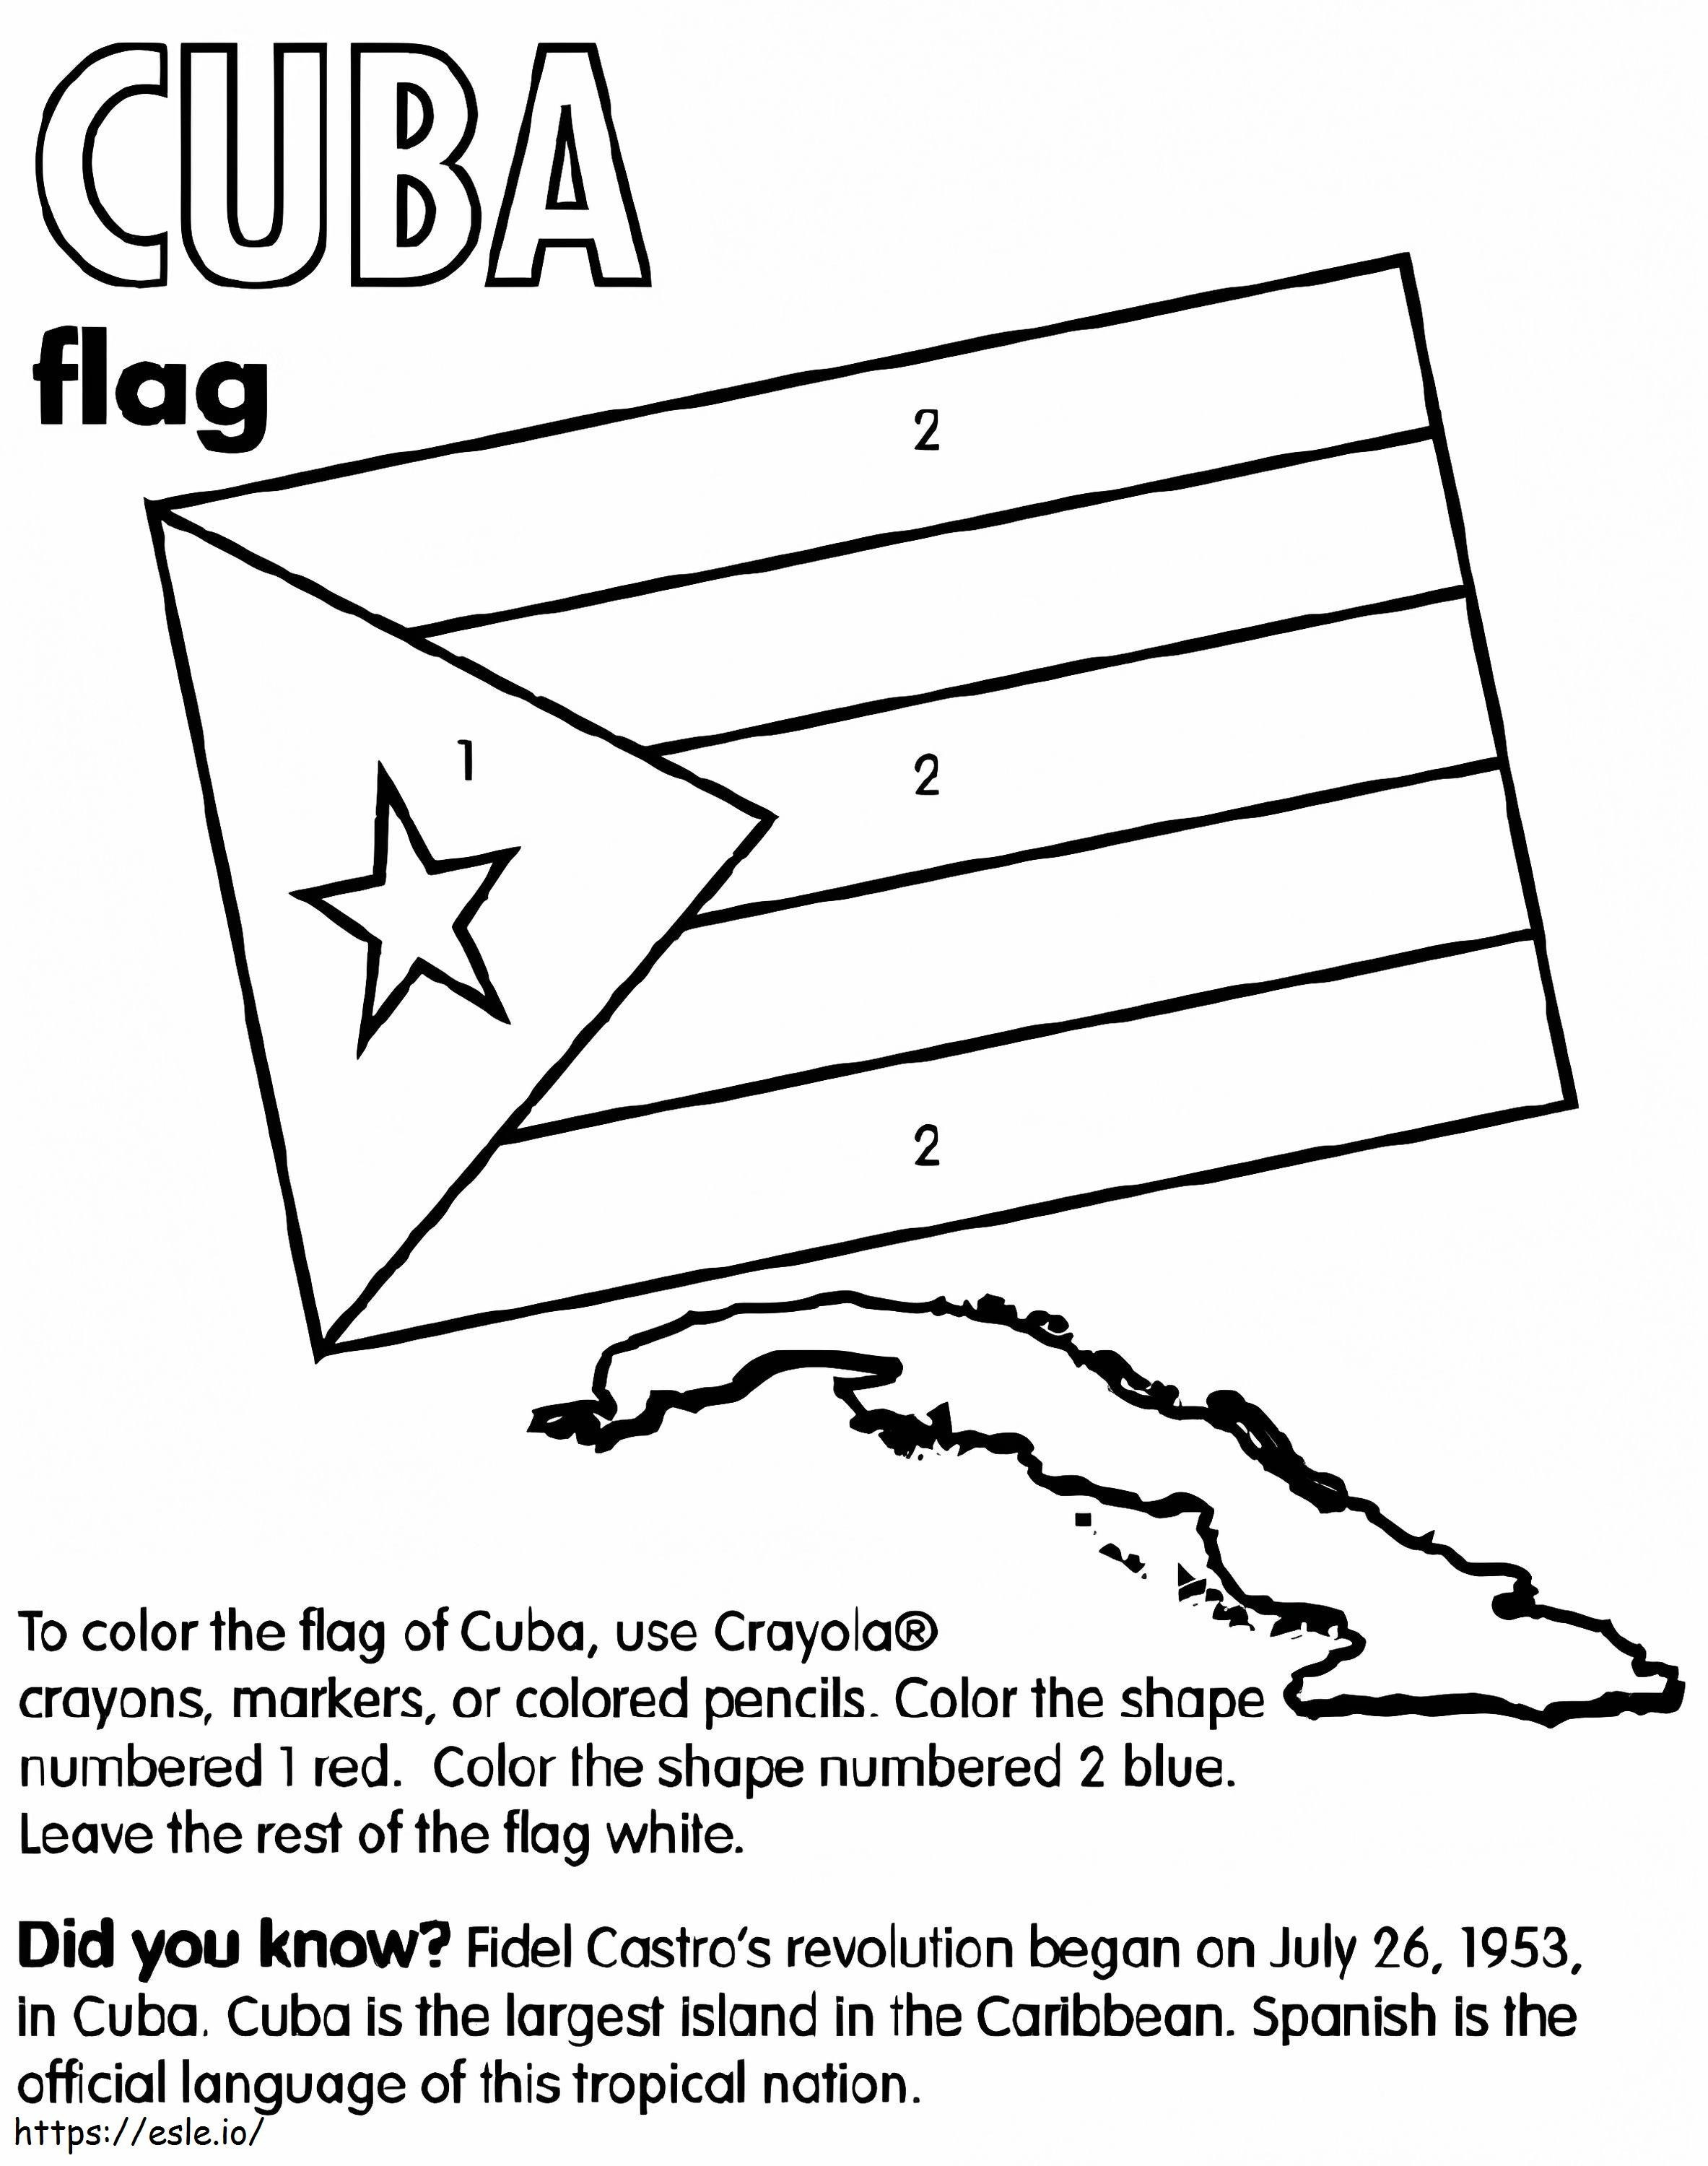 Mapa y bandera de Cuba para colorear